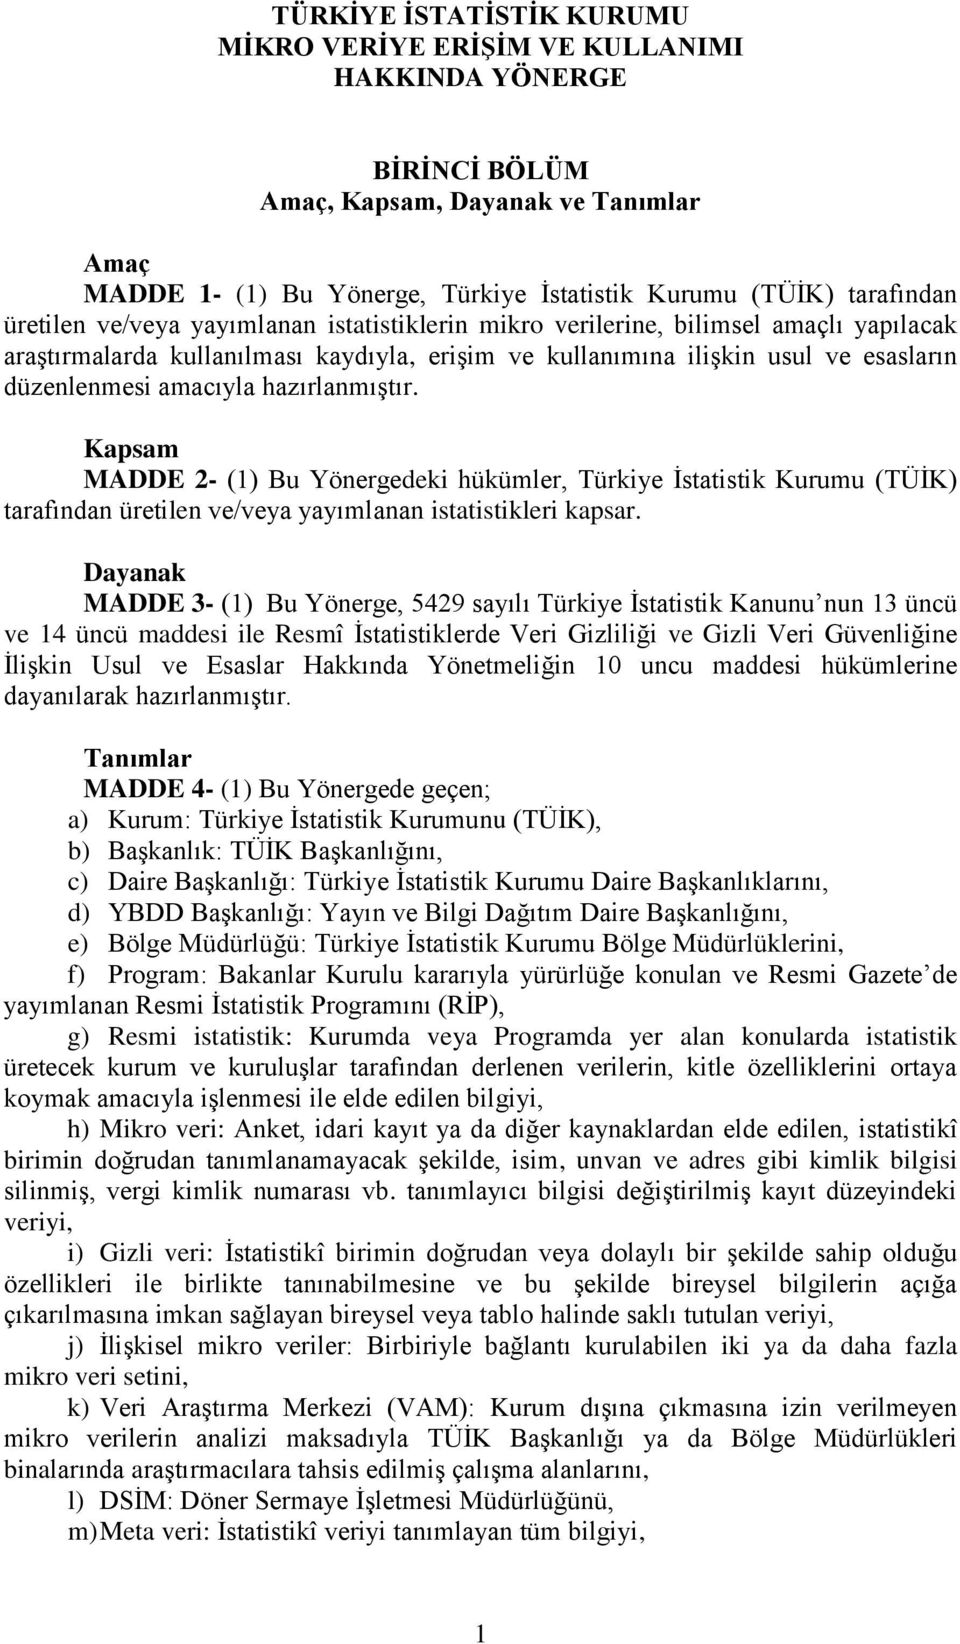 hazırlanmıştır. Kapsam MADDE 2- (1) Bu Yönergedeki hükümler, Türkiye İstatistik Kurumu (TÜİK) tarafından üretilen ve/veya yayımlanan istatistikleri kapsar.